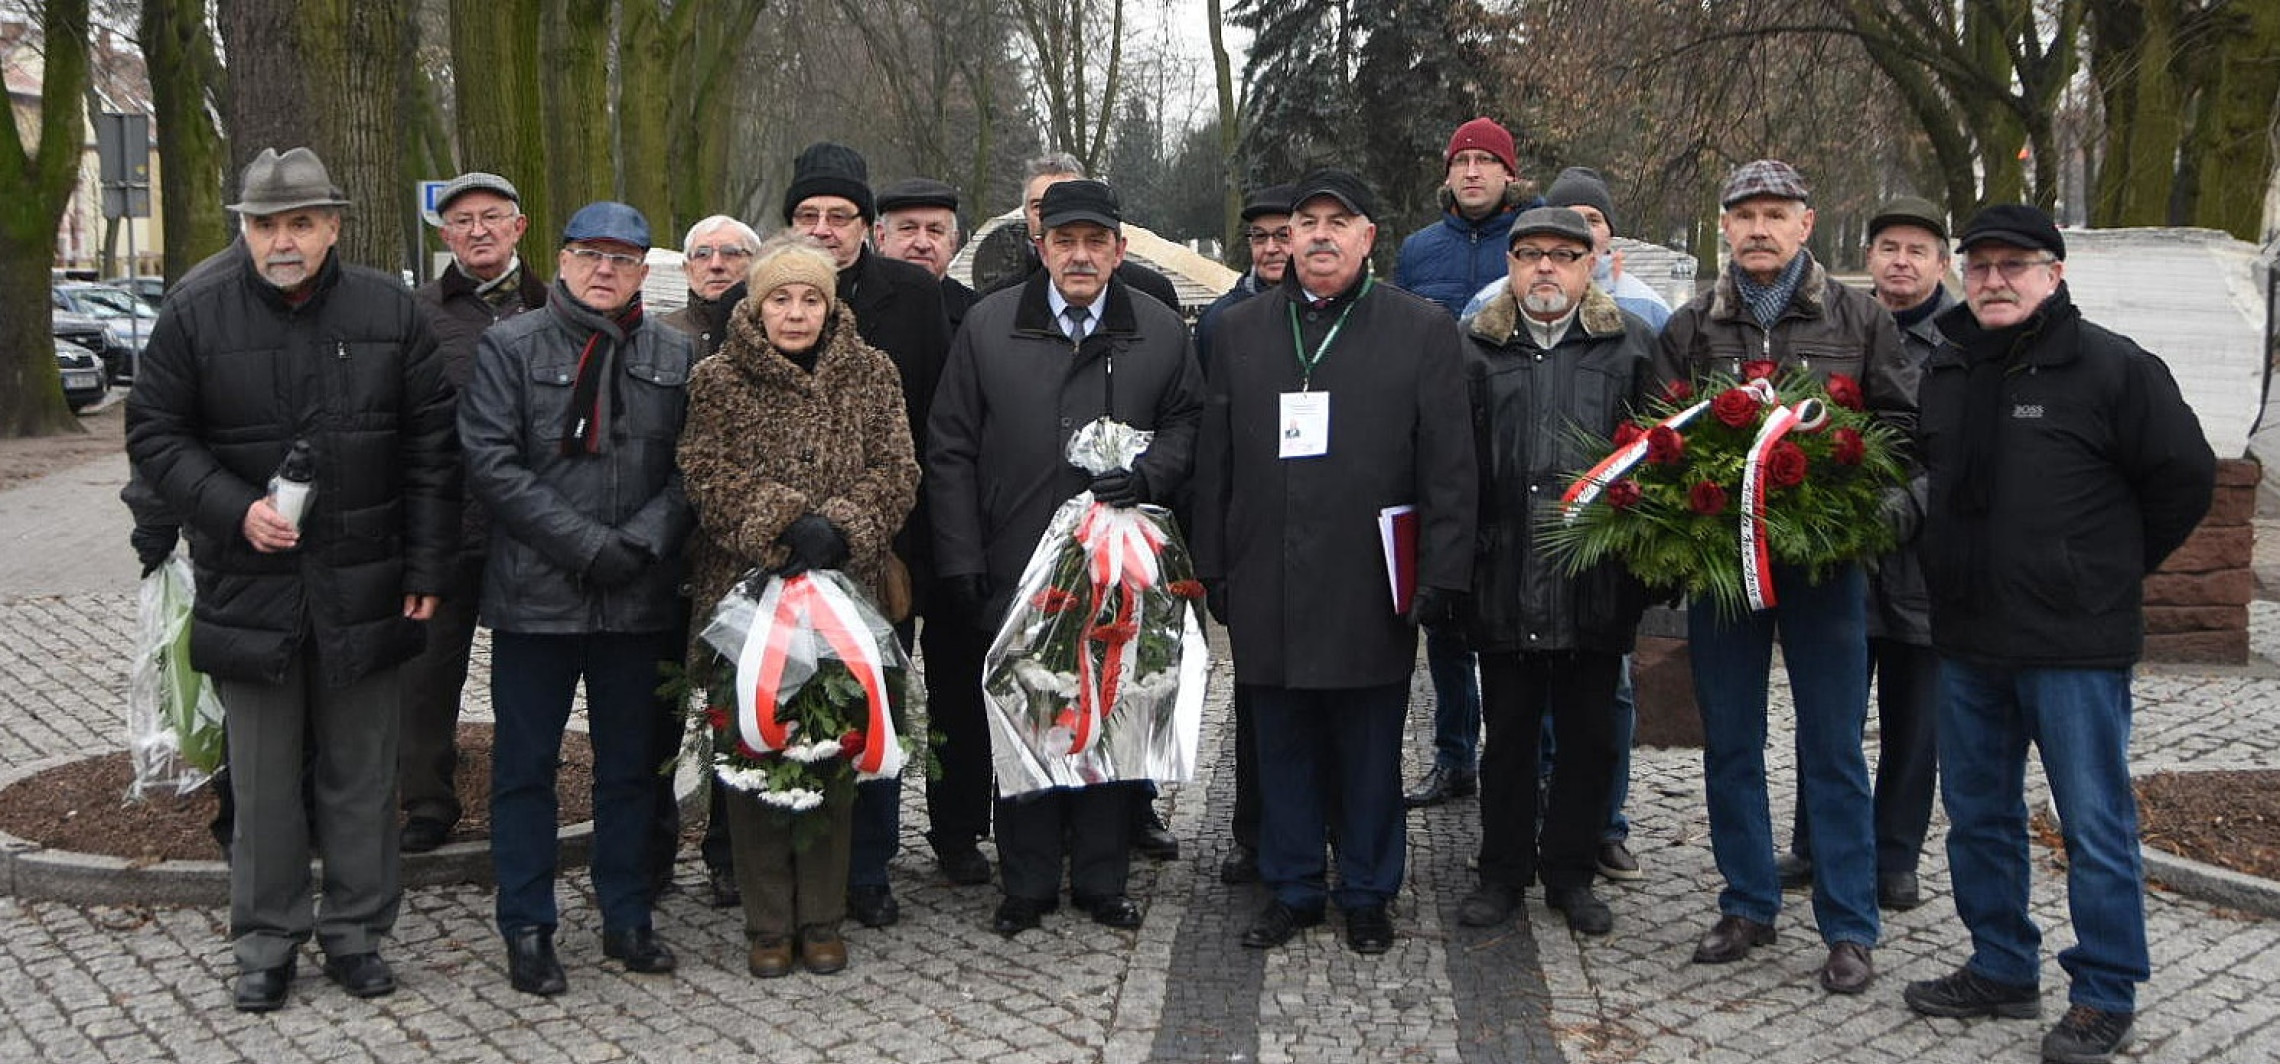 Inowrocław - Lewica zaprasza za tydzień pod pomnik